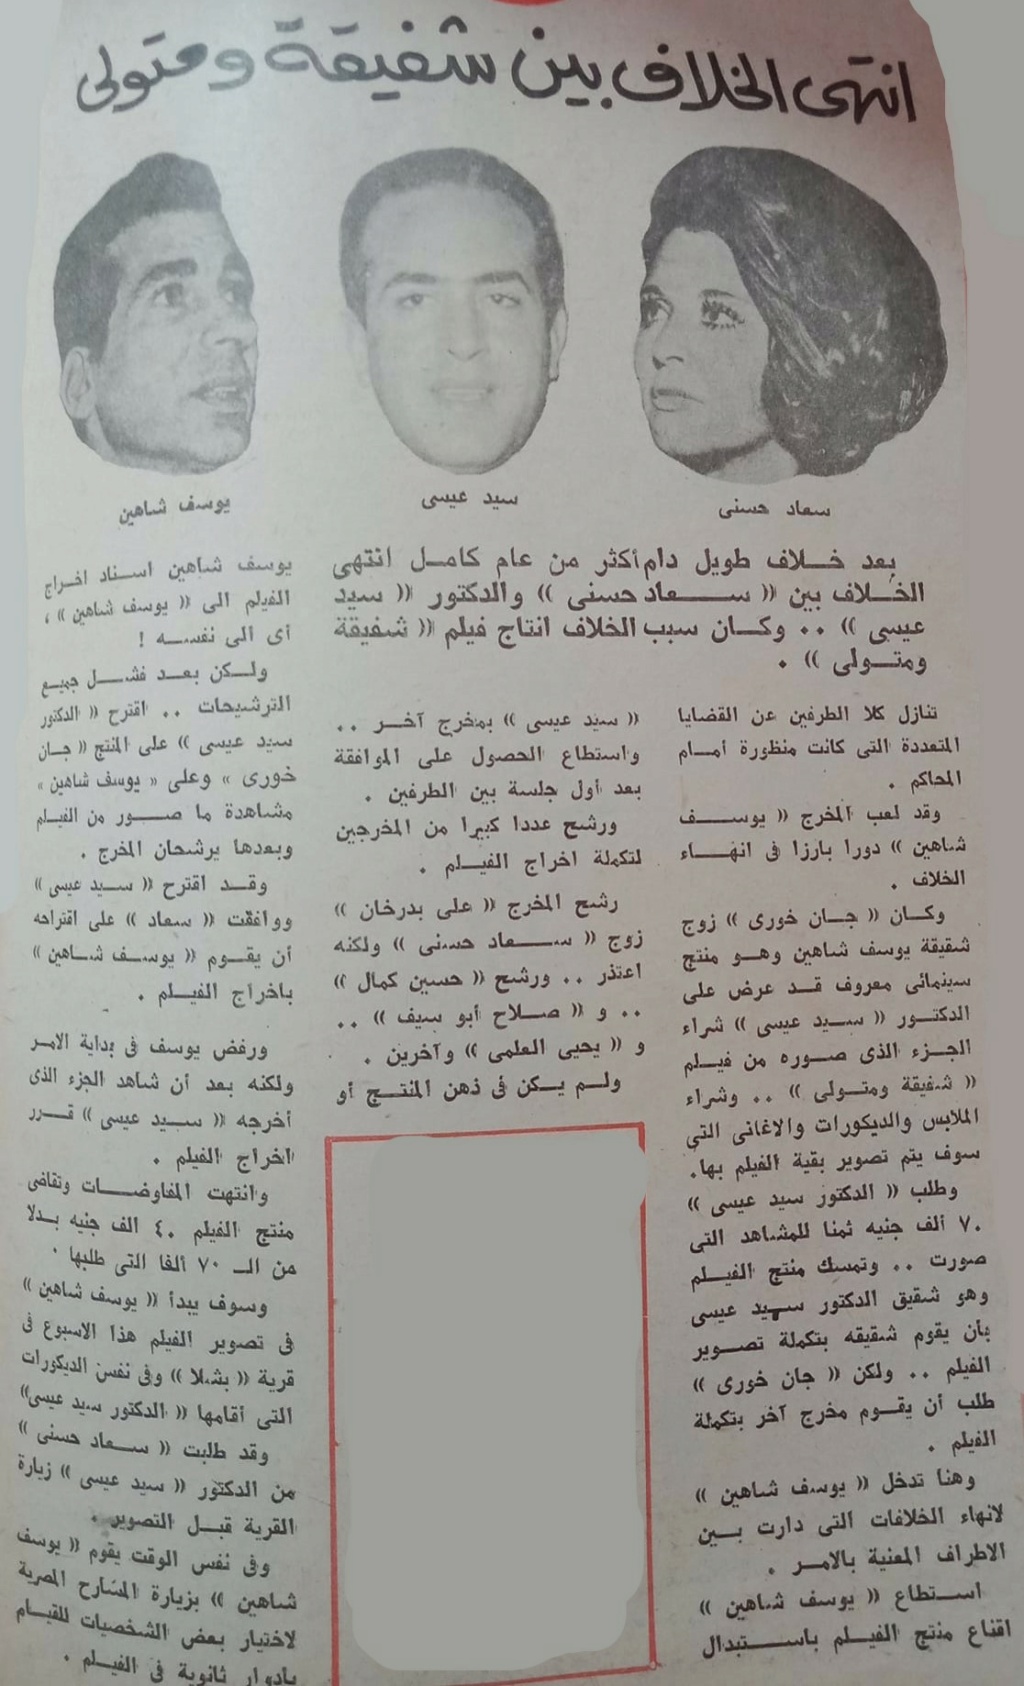 1977 - خبر صحفي : انتهى الخلاف بين شفيقة وتولي 1977 م Aoo_ay10